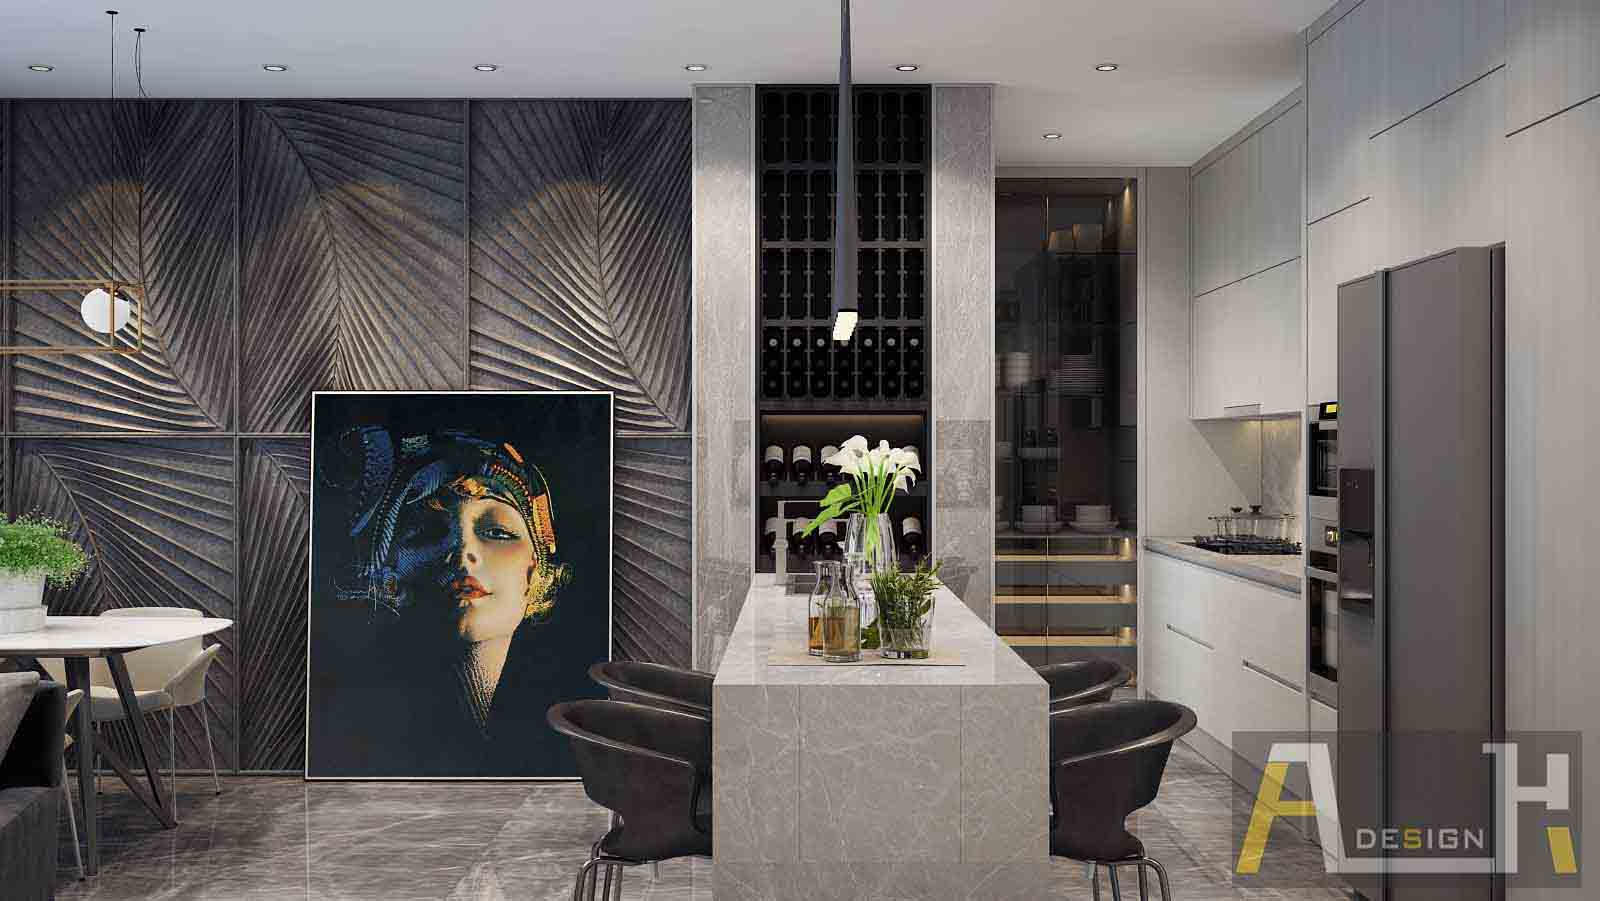 hình minh họa thiết kế nội thất chung cư đẹp với tông màu ấm và tranh nghệ thuật